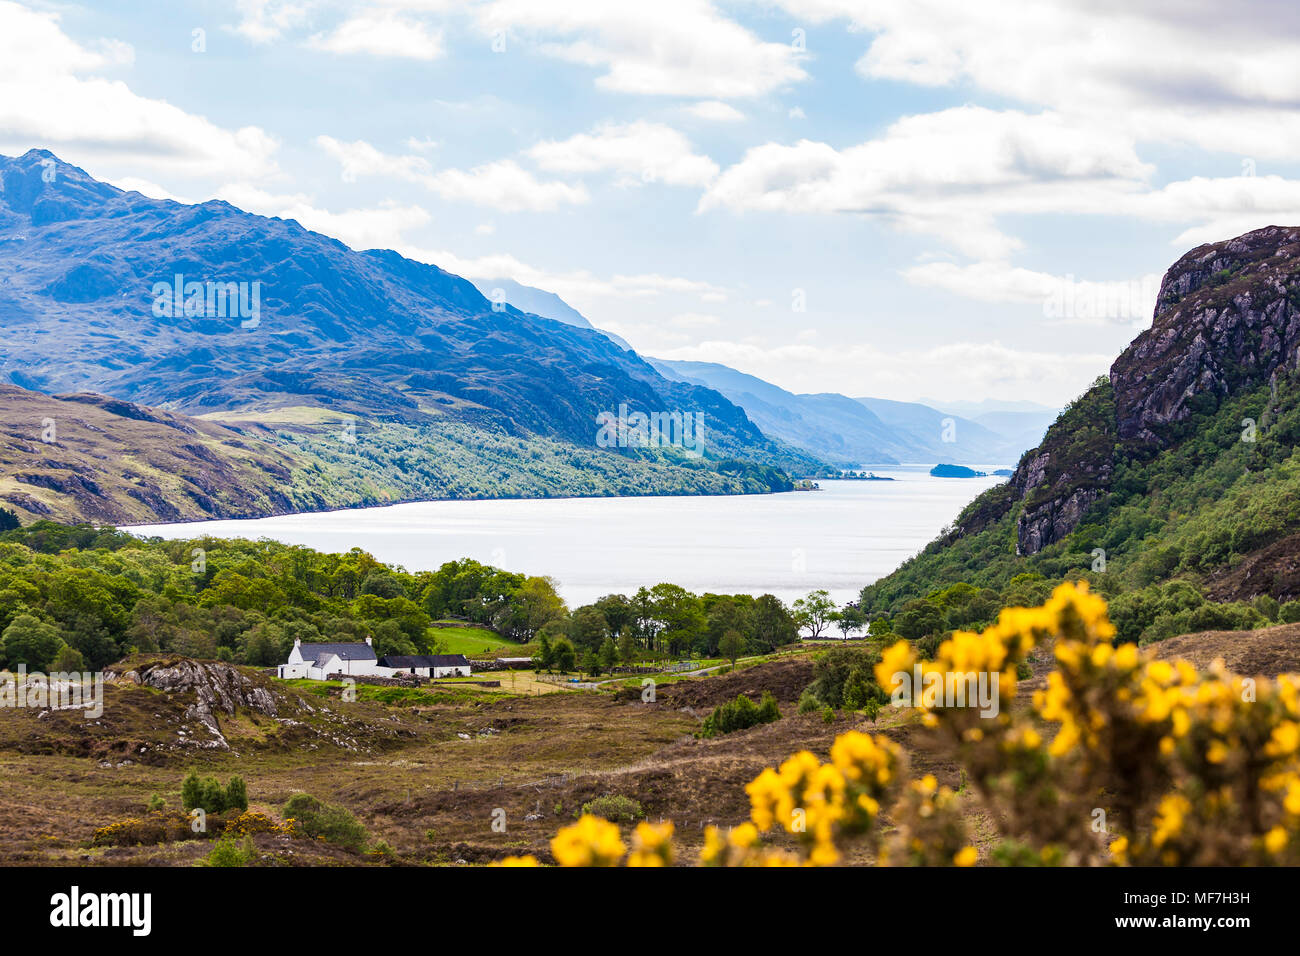 Reino Unido, Escocia, Highland, Loch Maree, lago de agua dulce, granja Foto de stock